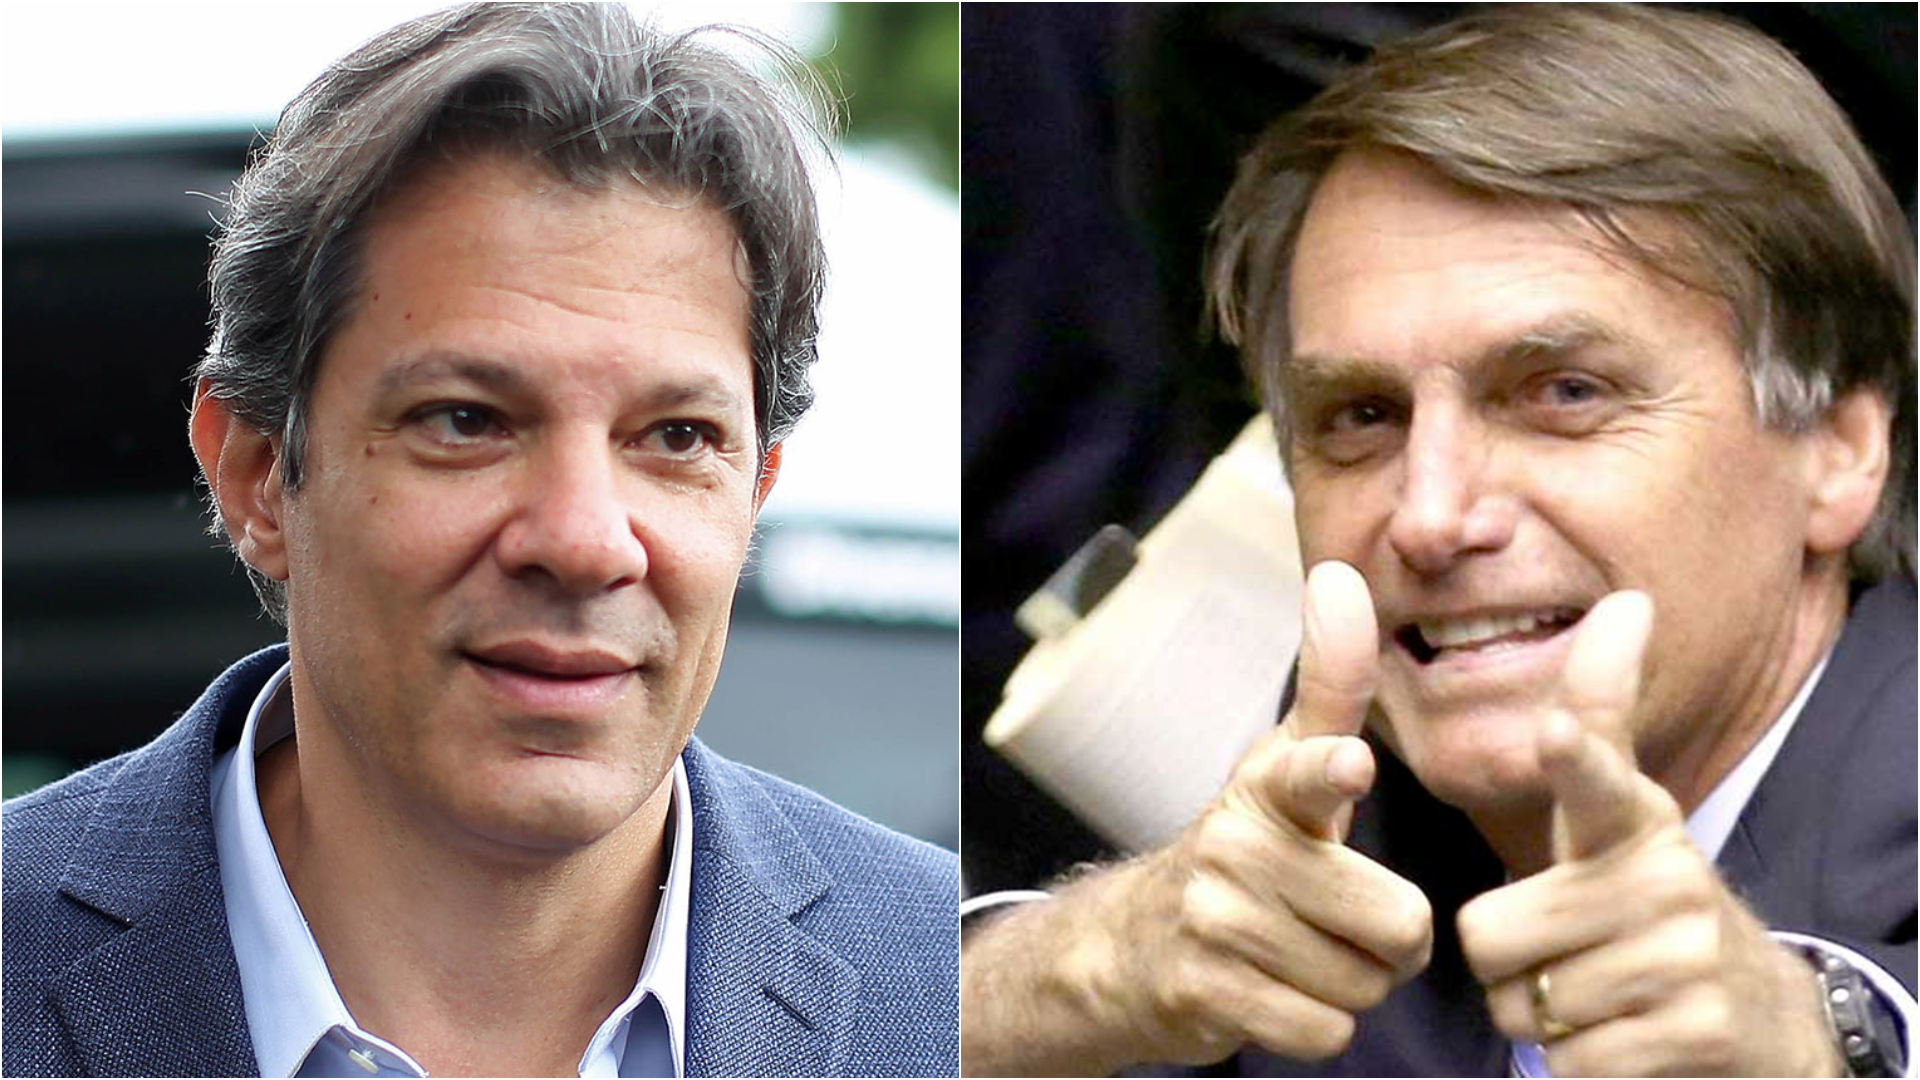 eleições 2018, Haddad, Bolsonaro, segundo turno, narrativa